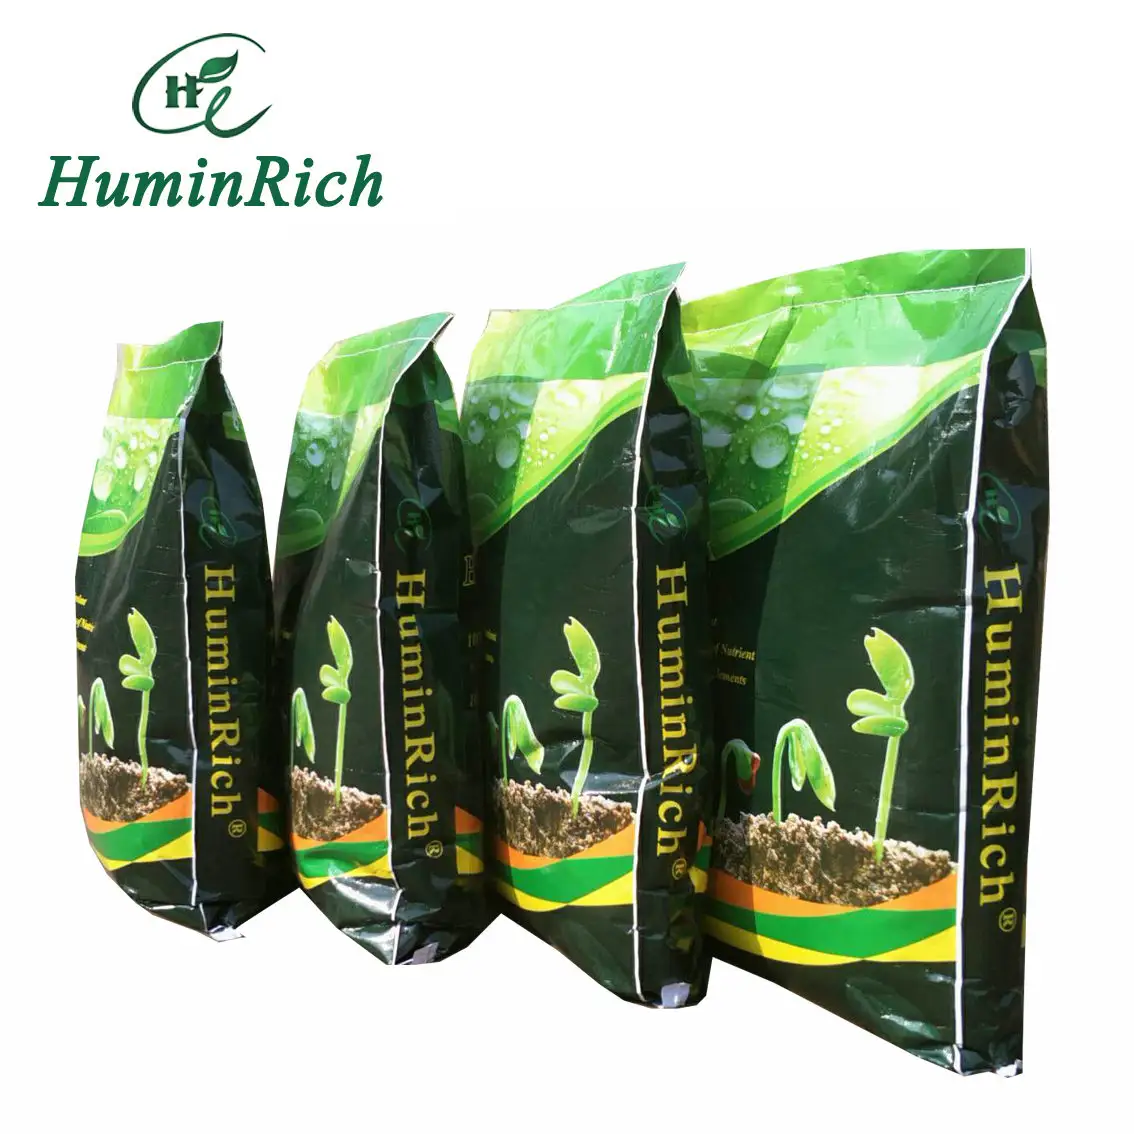 SH9040 Huminrich Prilled Fertilizante Granulada azot tesisi Ton üreticileri Pupuk tedarikçiler granül fiyat gübreler üre